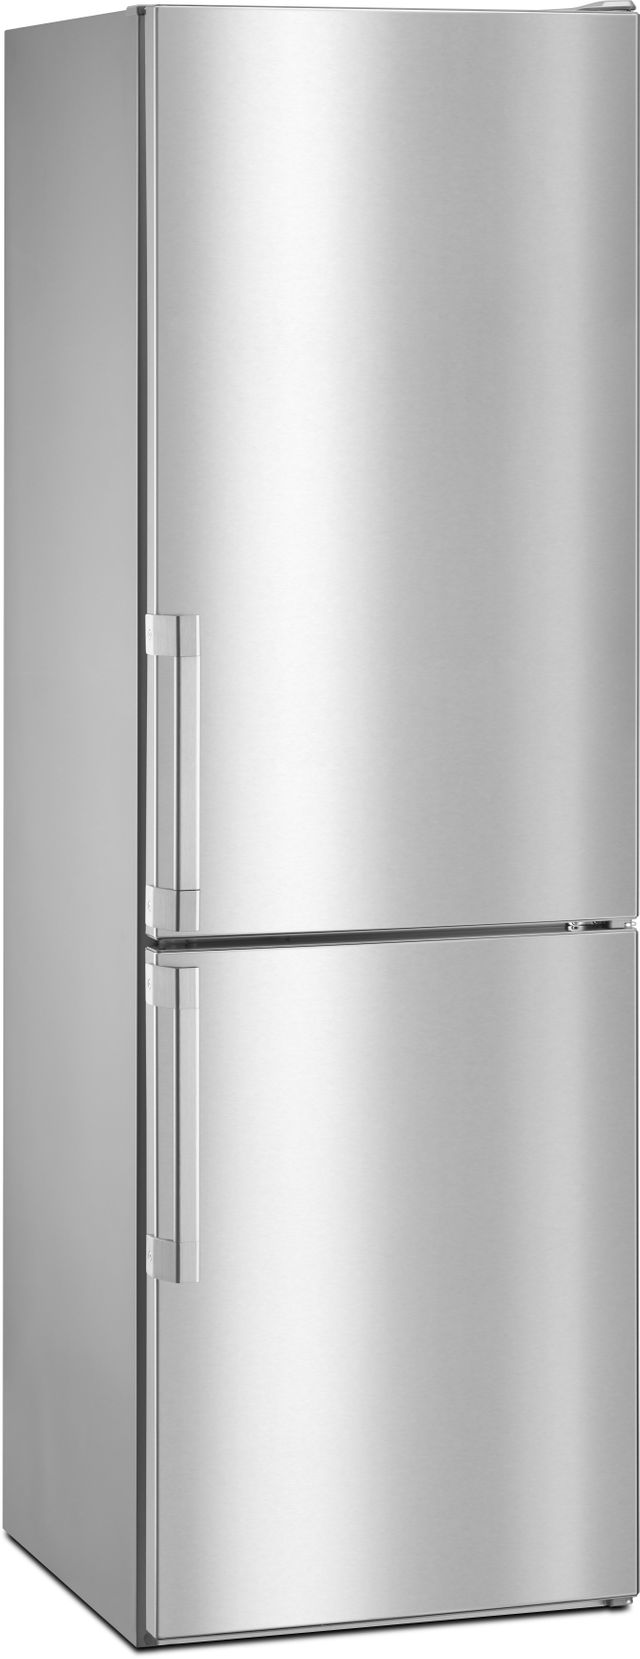 Réfrigérateur à congélateur inférieur à profondeur de comptoir de 24 po Whirlpool® de 11,3 pi³ - Acier inoxydable 1